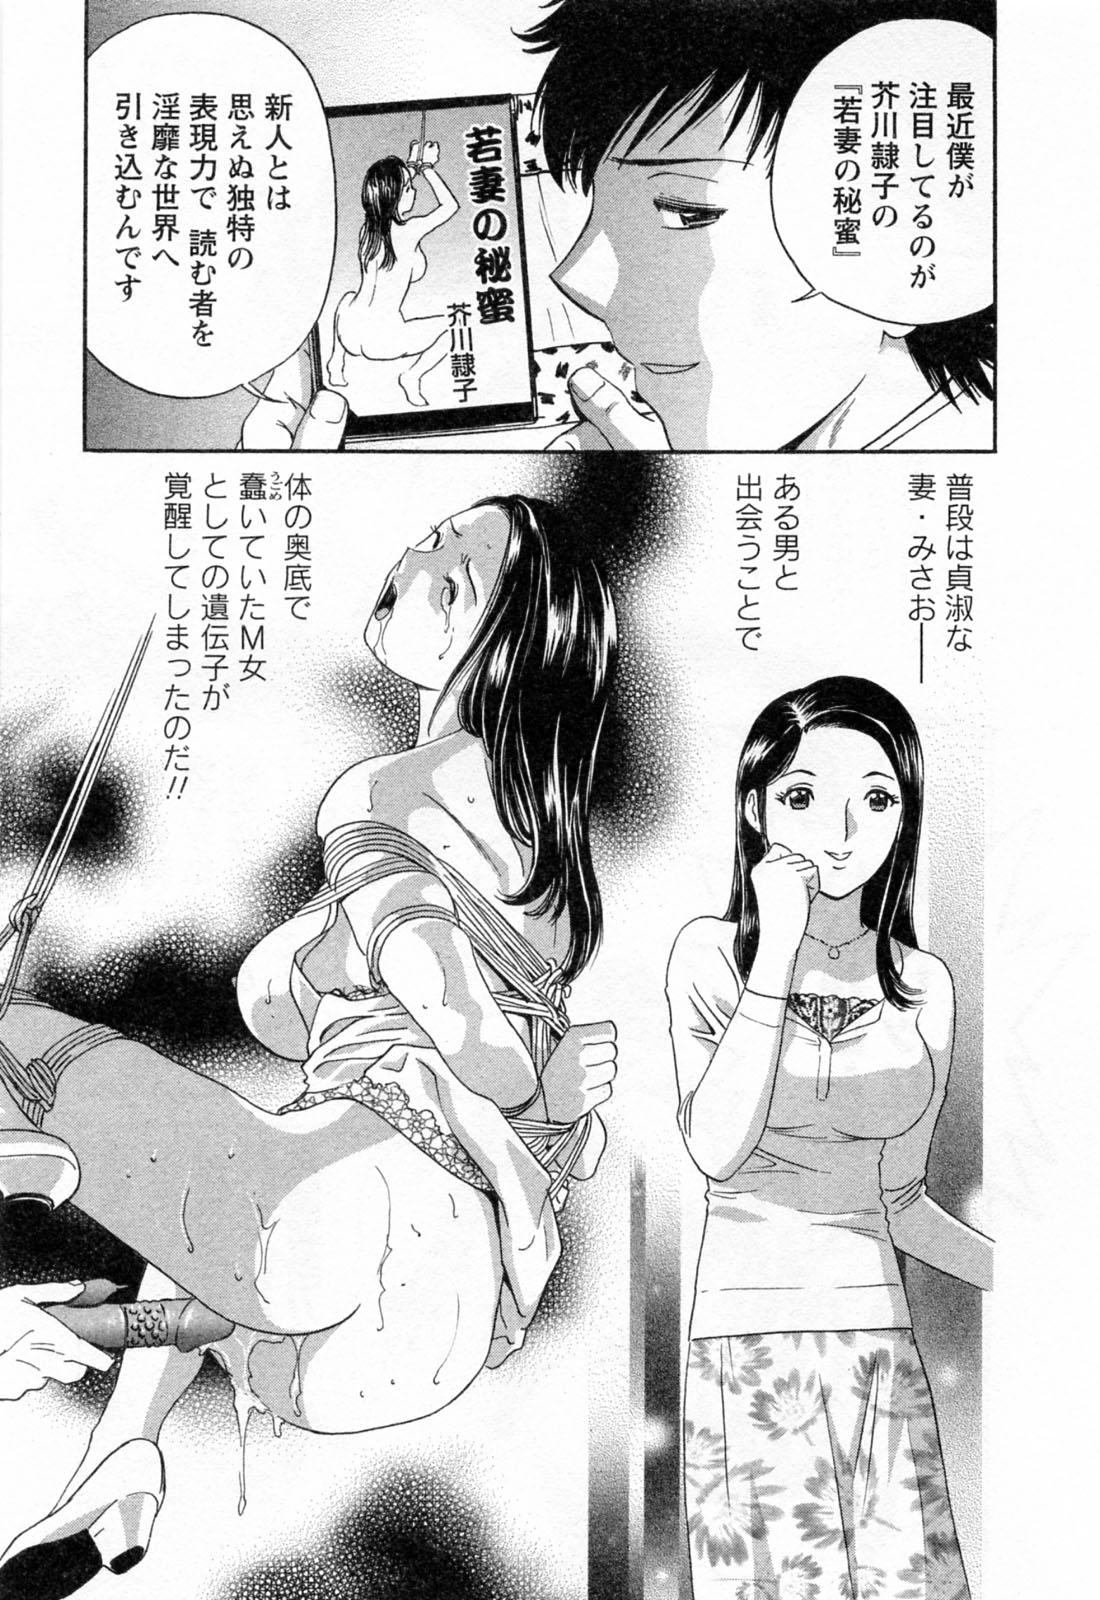 [Hidemaru] Mo-Retsu! Boin Sensei (Boing Boing Teacher) Vol.4 12